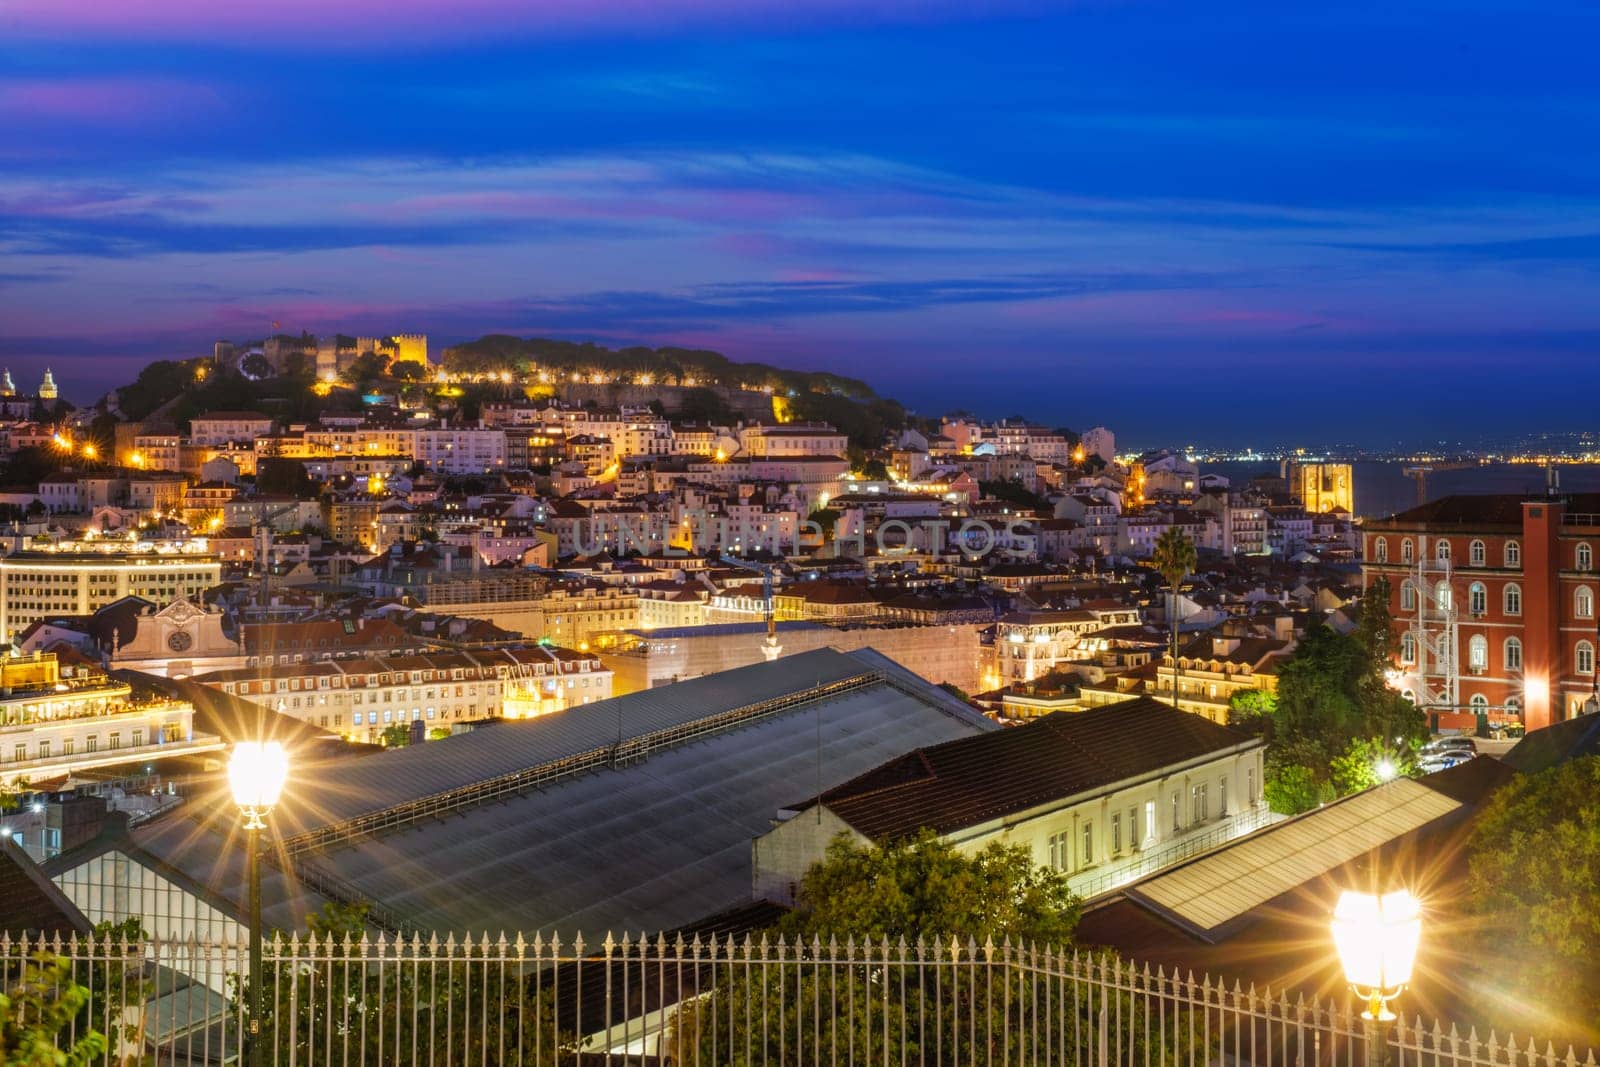 View of Lisbon from Miradouro de Sao Pedro de Alcantara viewpoint. Lisbon, Portugal by dimol